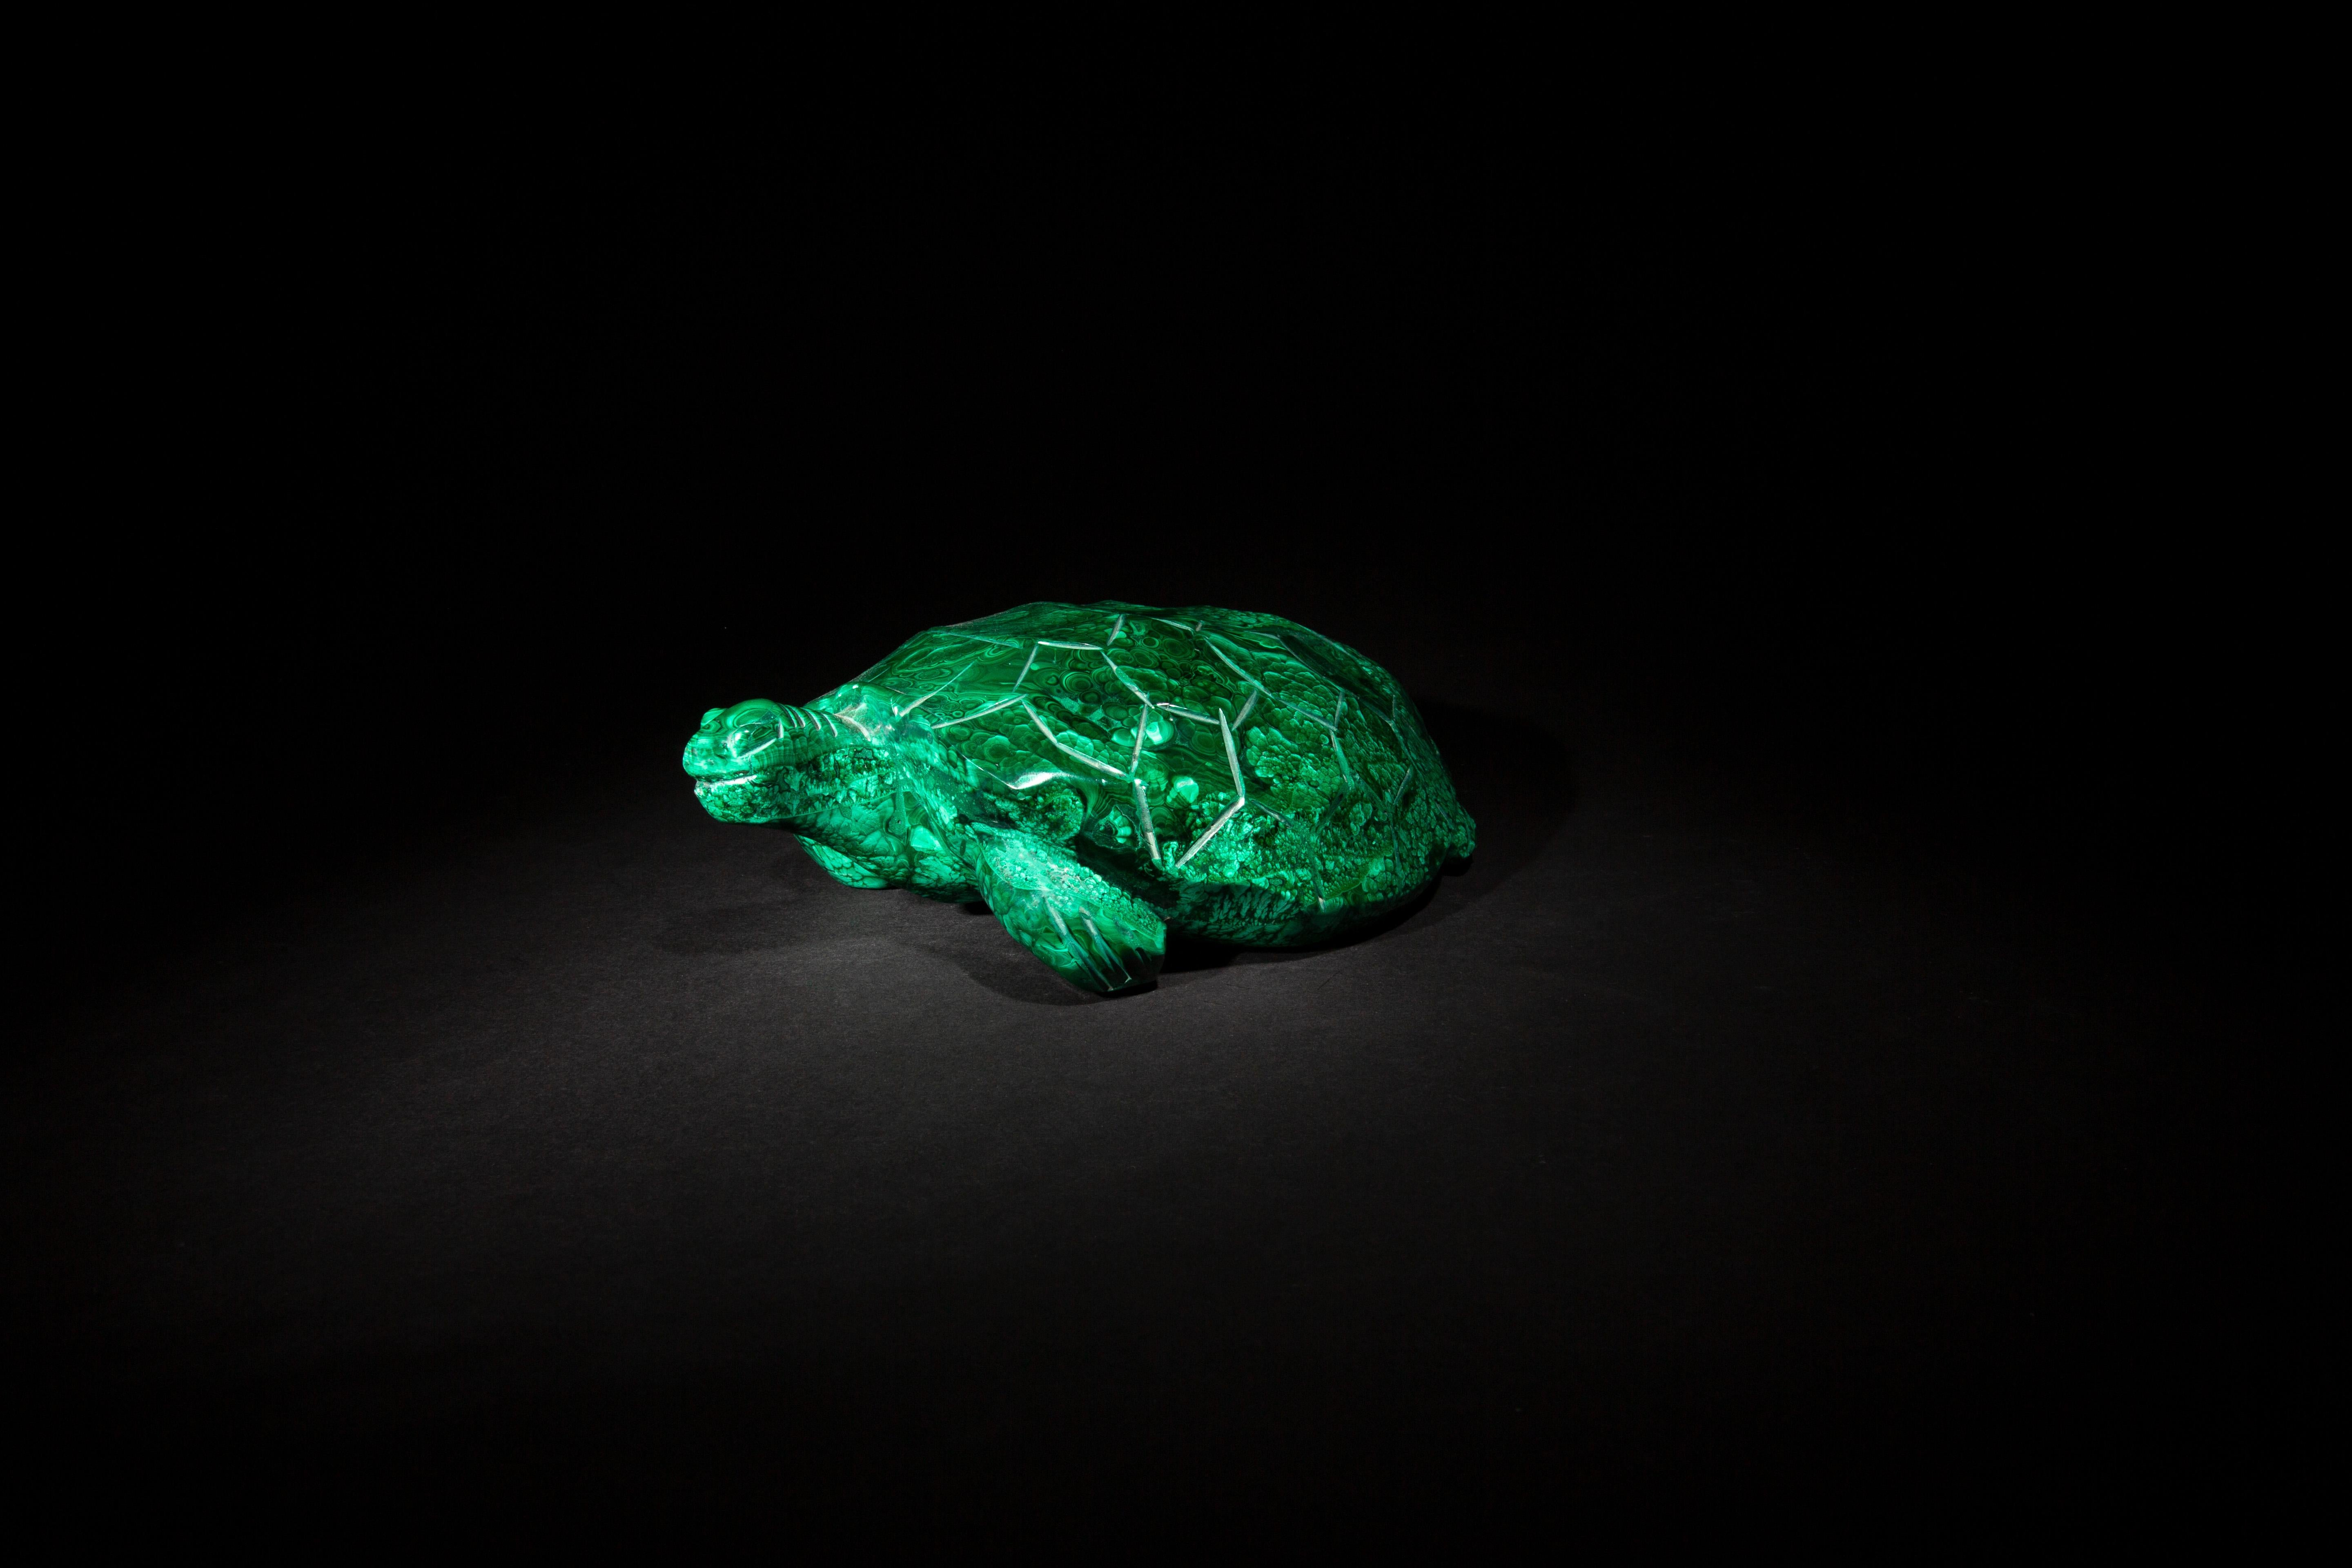 Cette élégante sculpture de tortue en malachite, mesurant 8,5 pouces sur 6 pouces sur 2,75 pouces, est un véritable bijou d'artisanat. Habilement sculptée dans de la malachite de qualité supérieure, elle présente les tourbillons vert vif et les